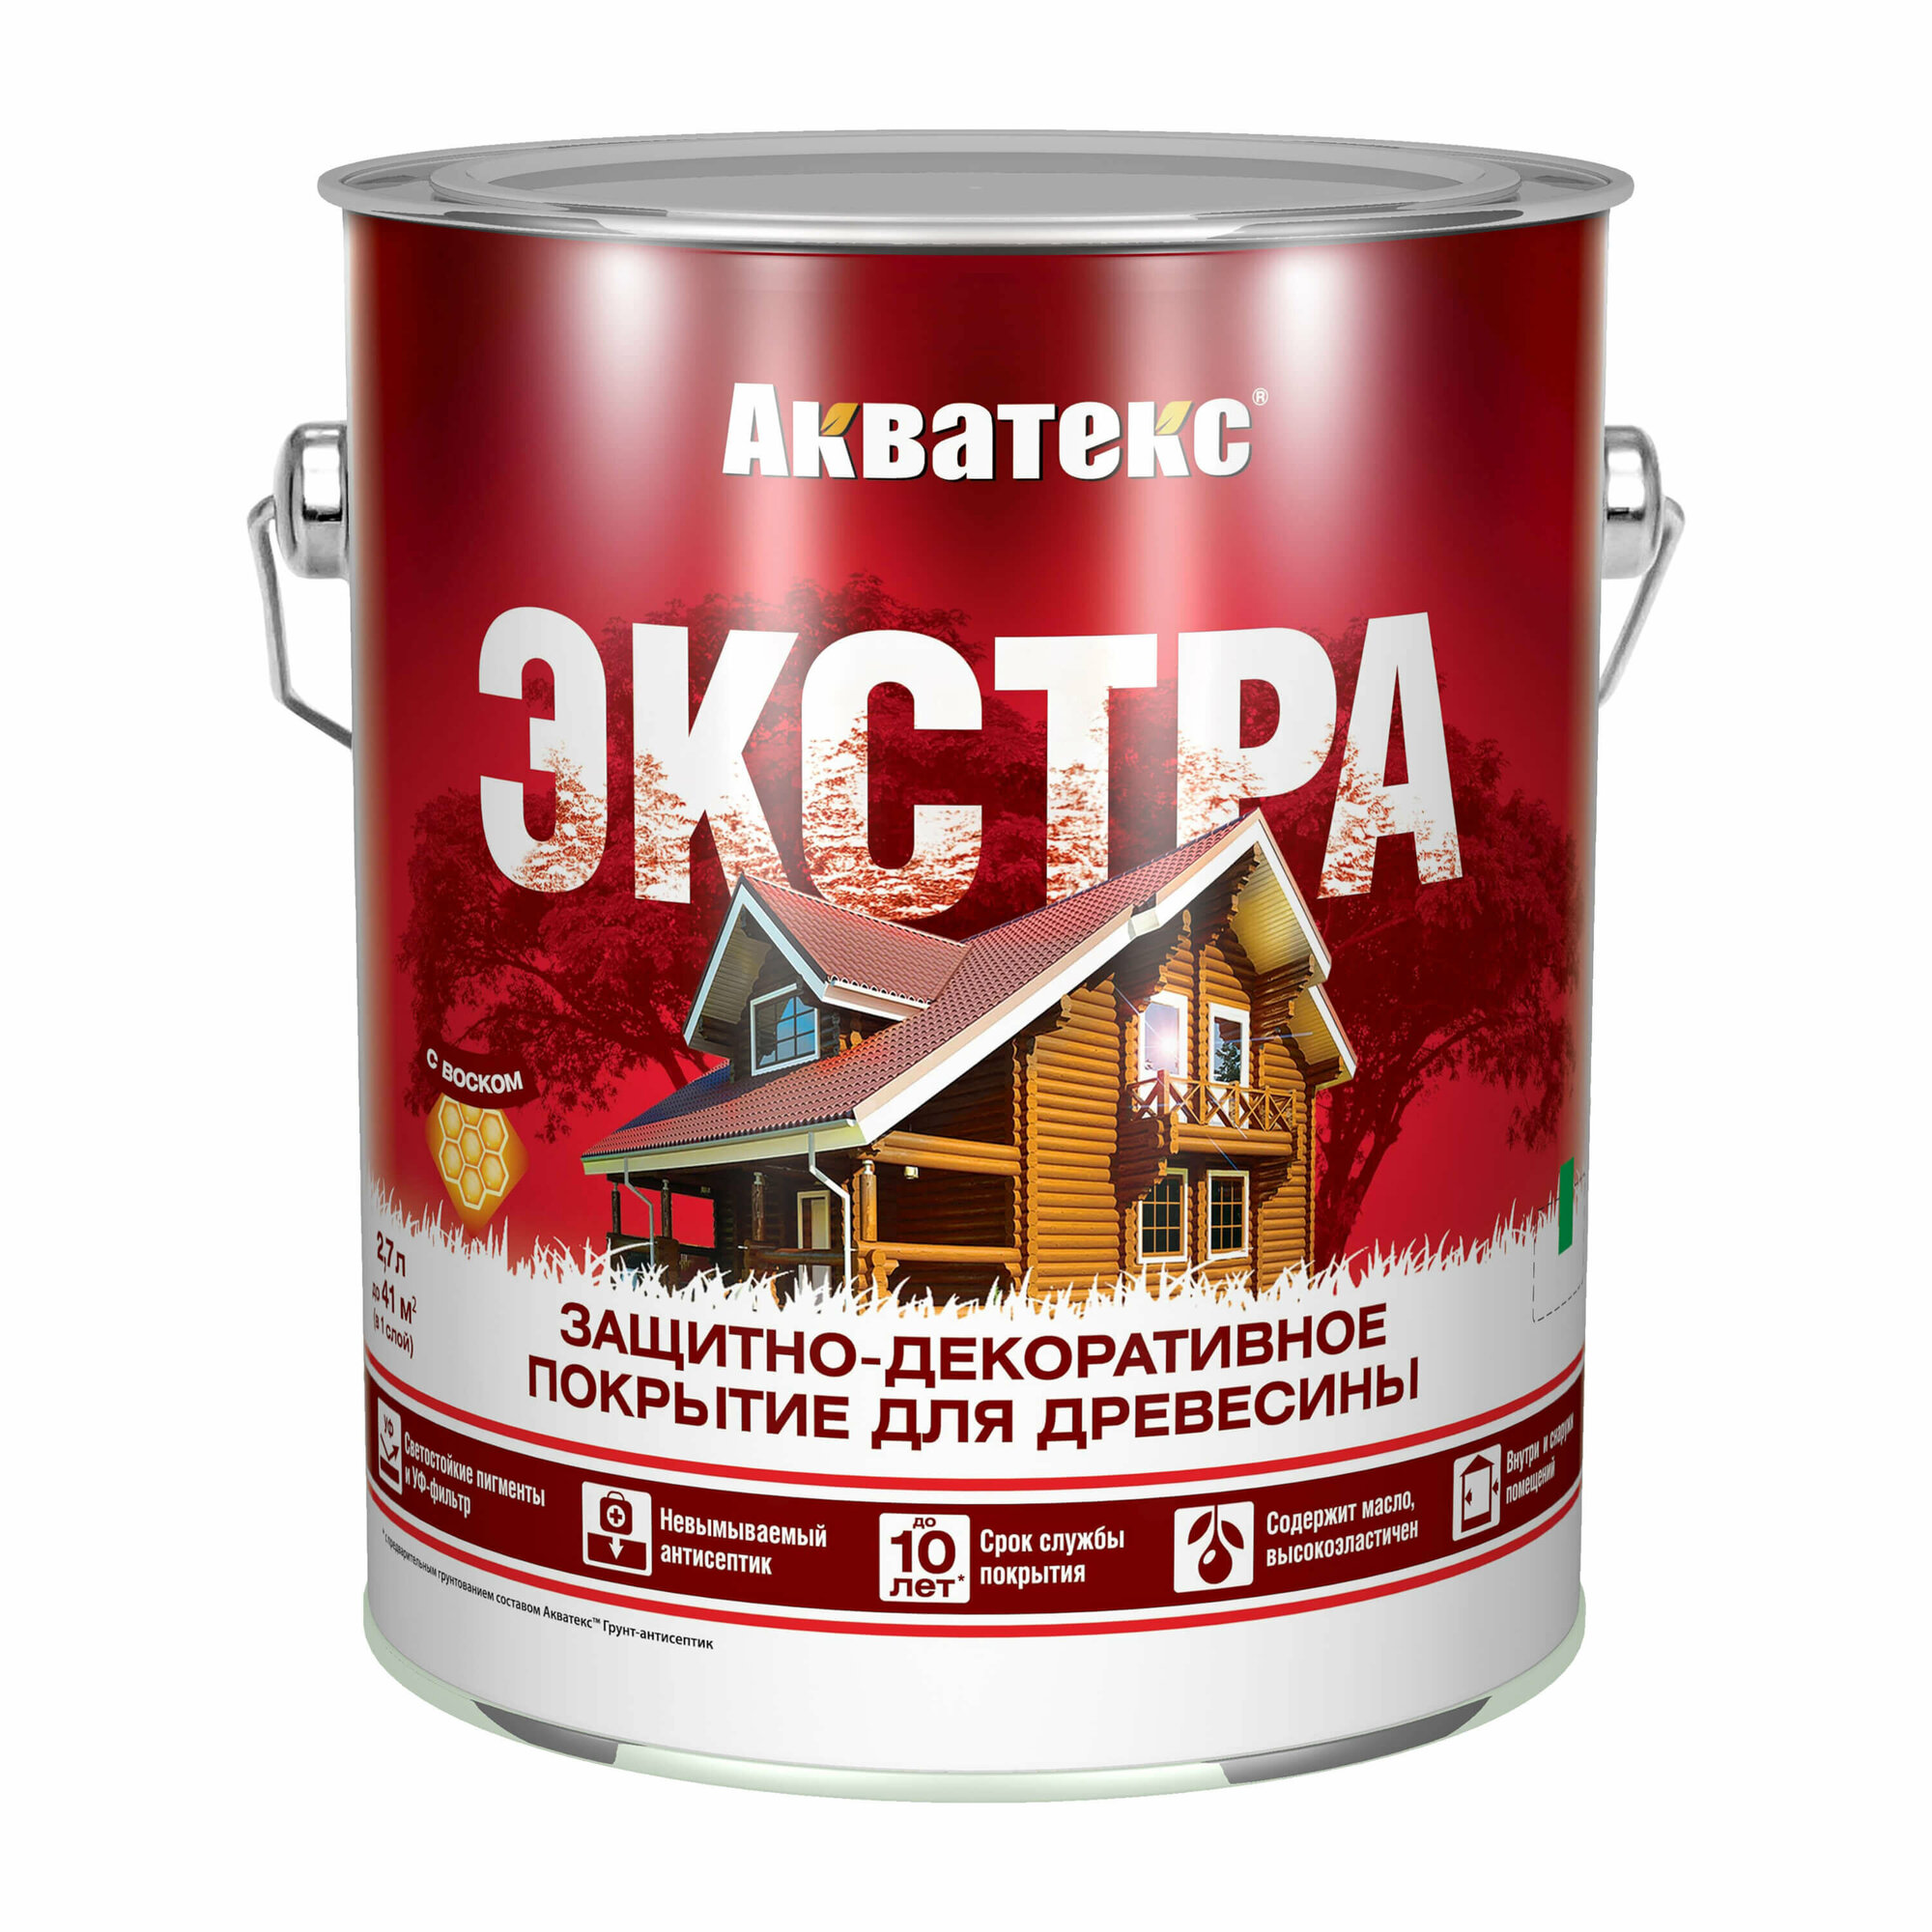 Акватекс-Экстра защитно-декоративное покрытие для древесины алкидное полуглянц, орех (2,7л) new